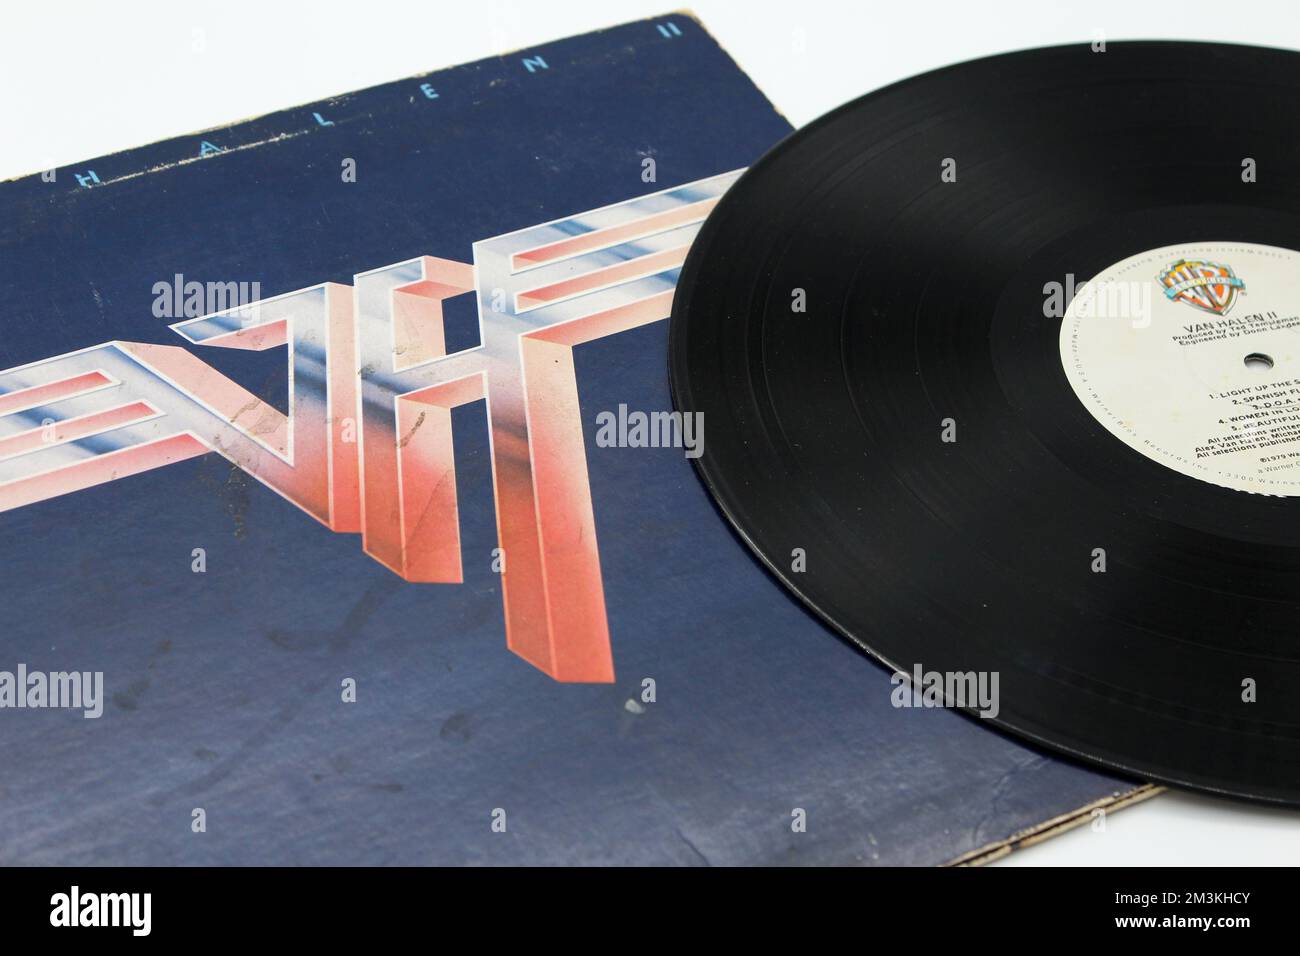 Hard Rock, Heavy Metal und Glam Metal Band, Van Halen Musikalbum auf Schallplatten-LP-Disc. Titel: Albumcover van Halen II Stockfoto